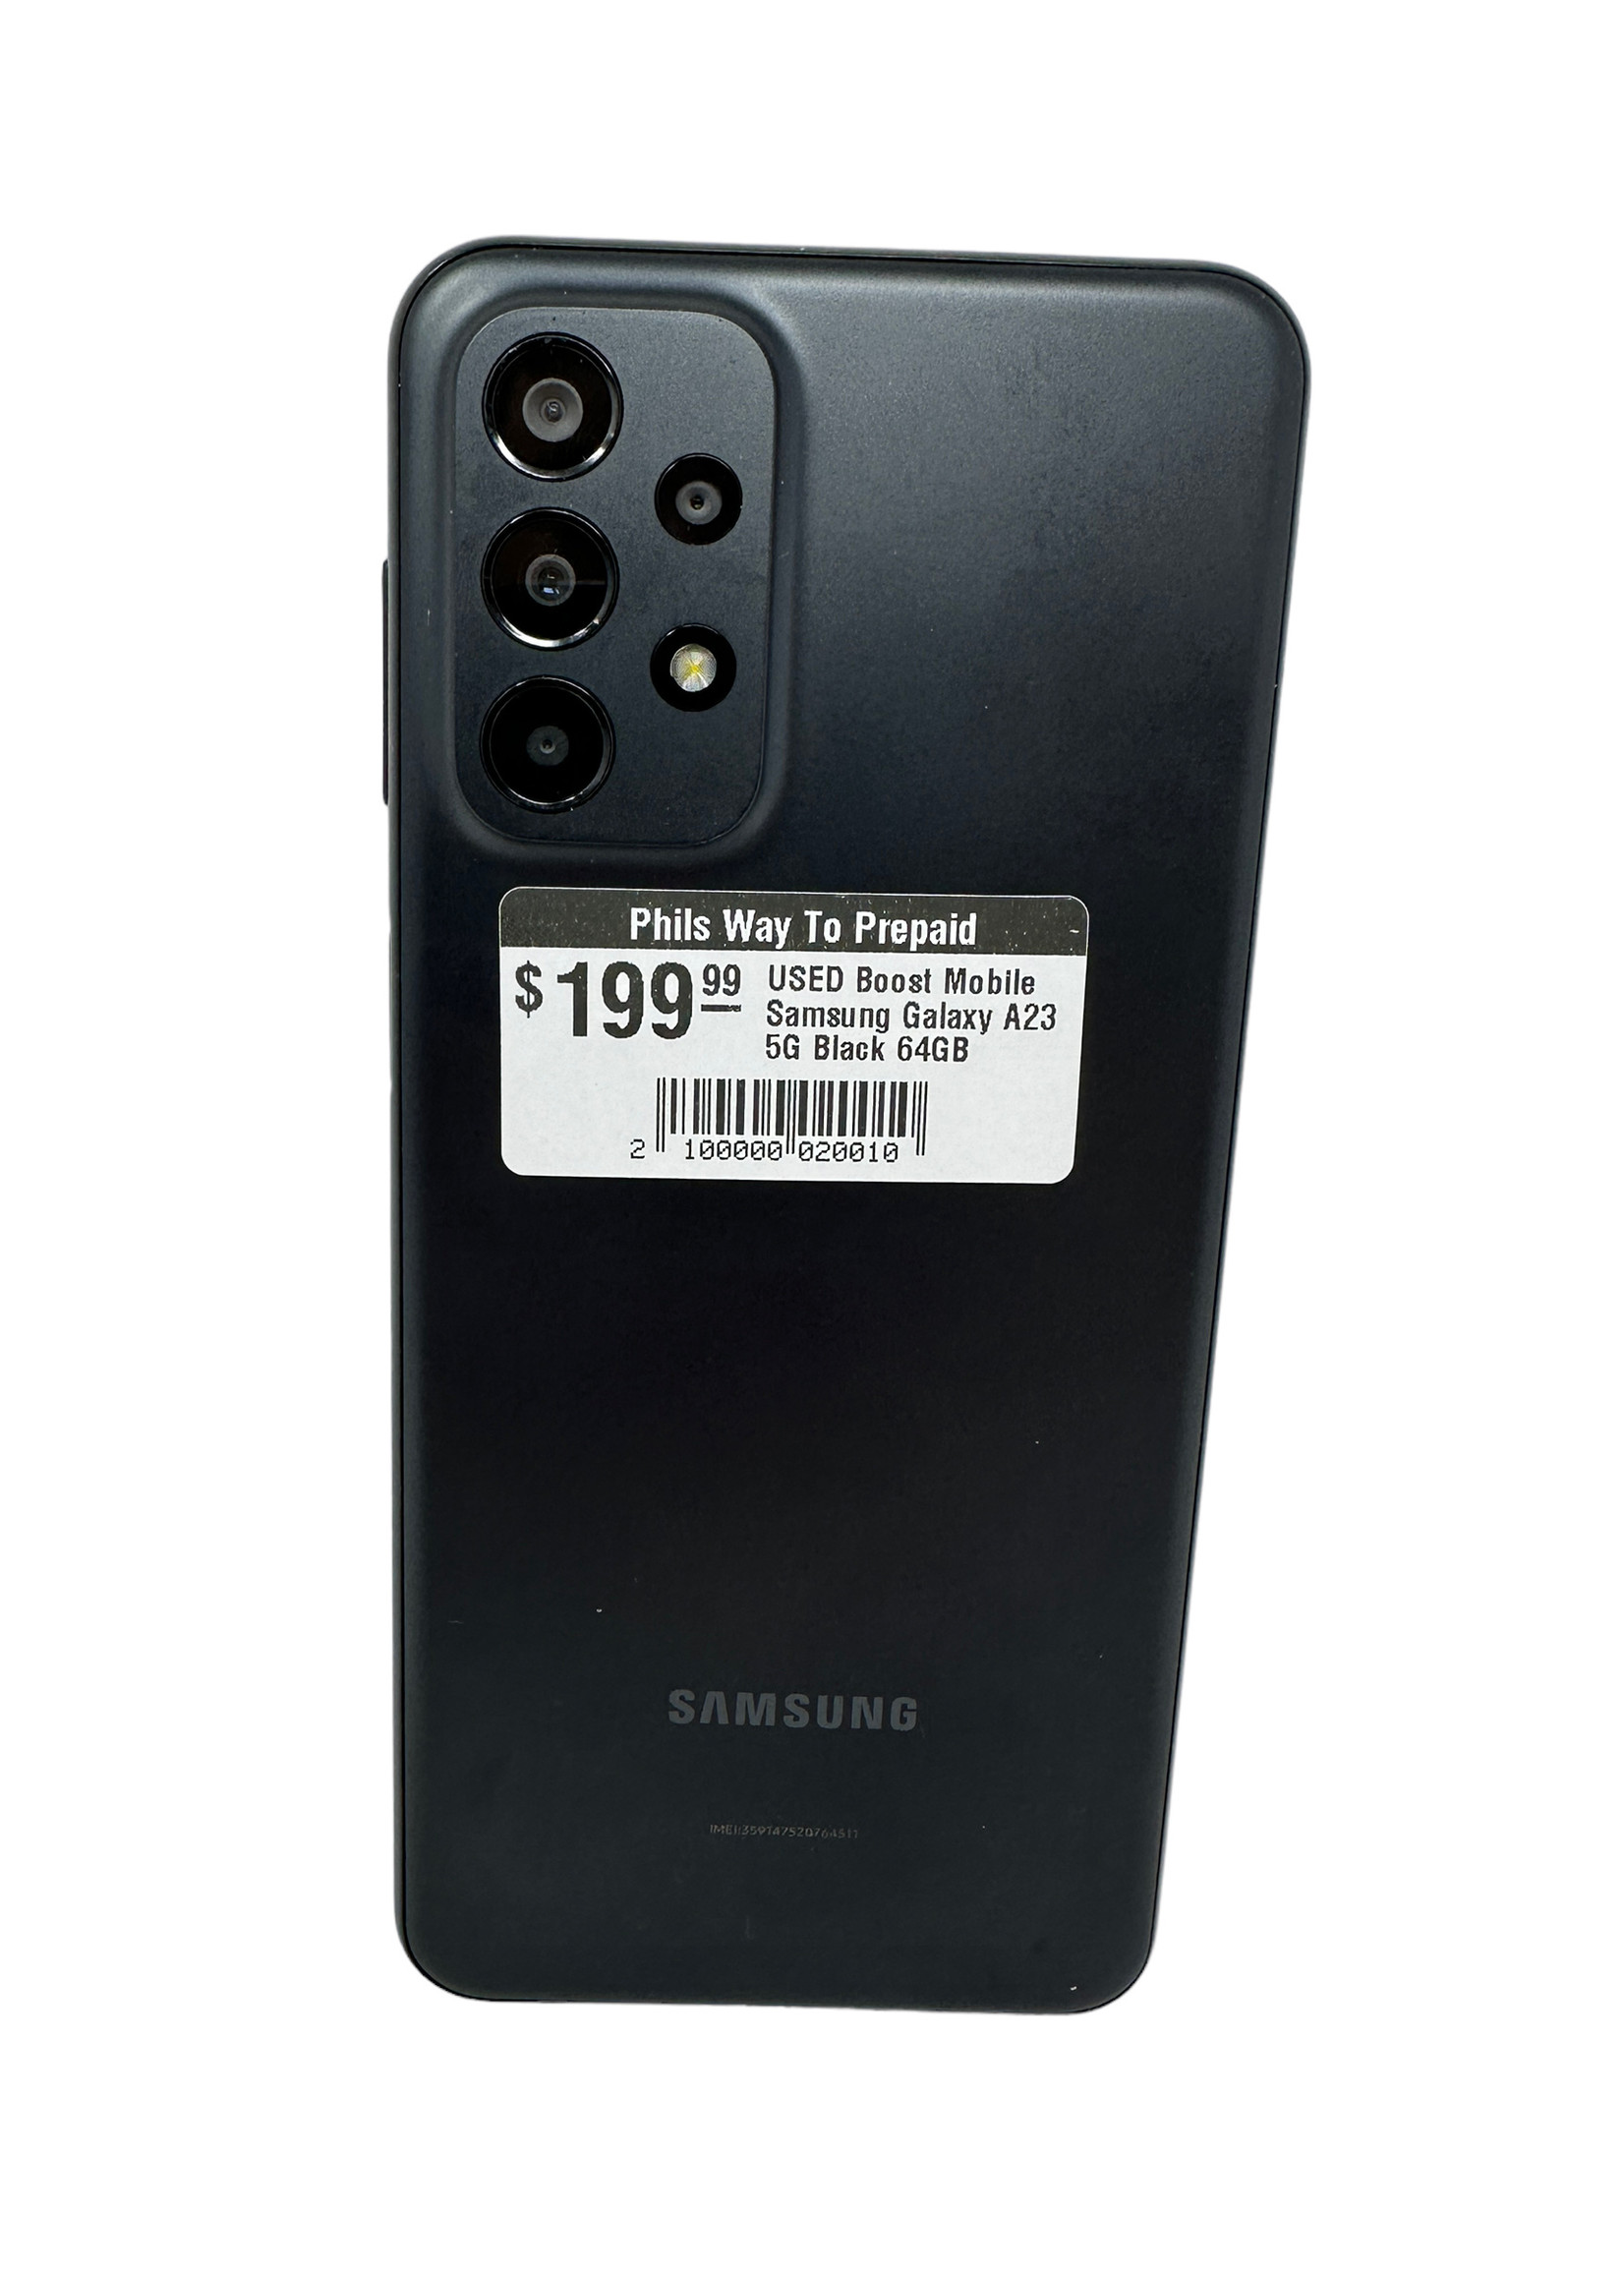 Samsung USED Boost Mobile Samsung Galaxy A23 5G Black 64GB